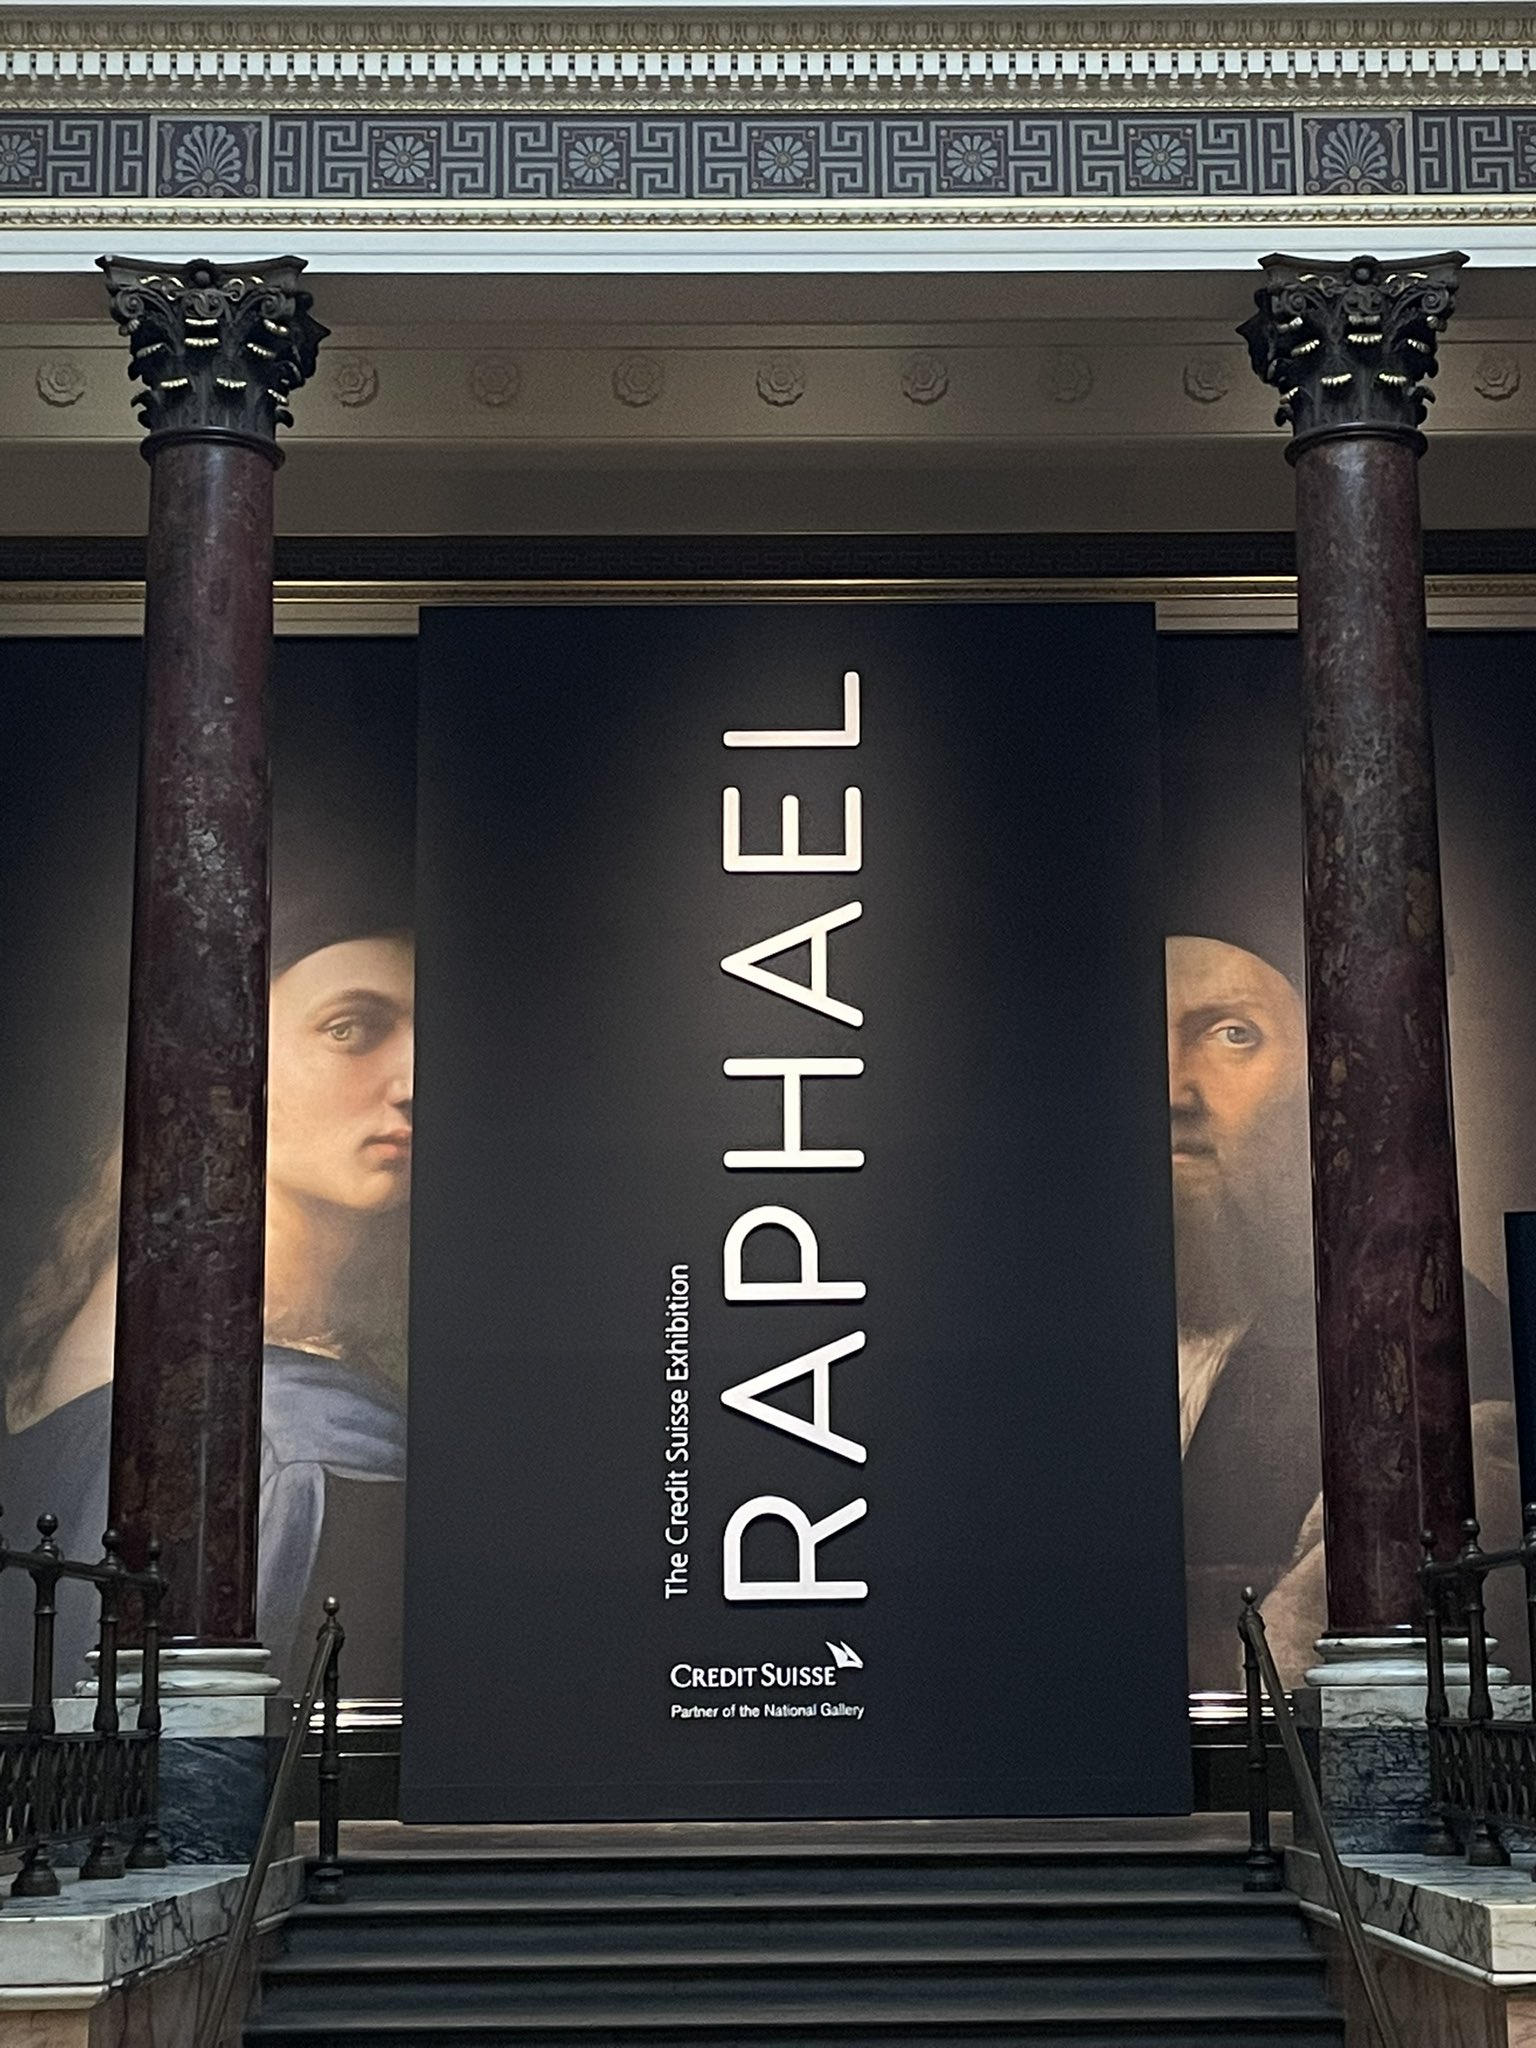 The Credit Suisse Exhibition: Raphael, Past exhibitions